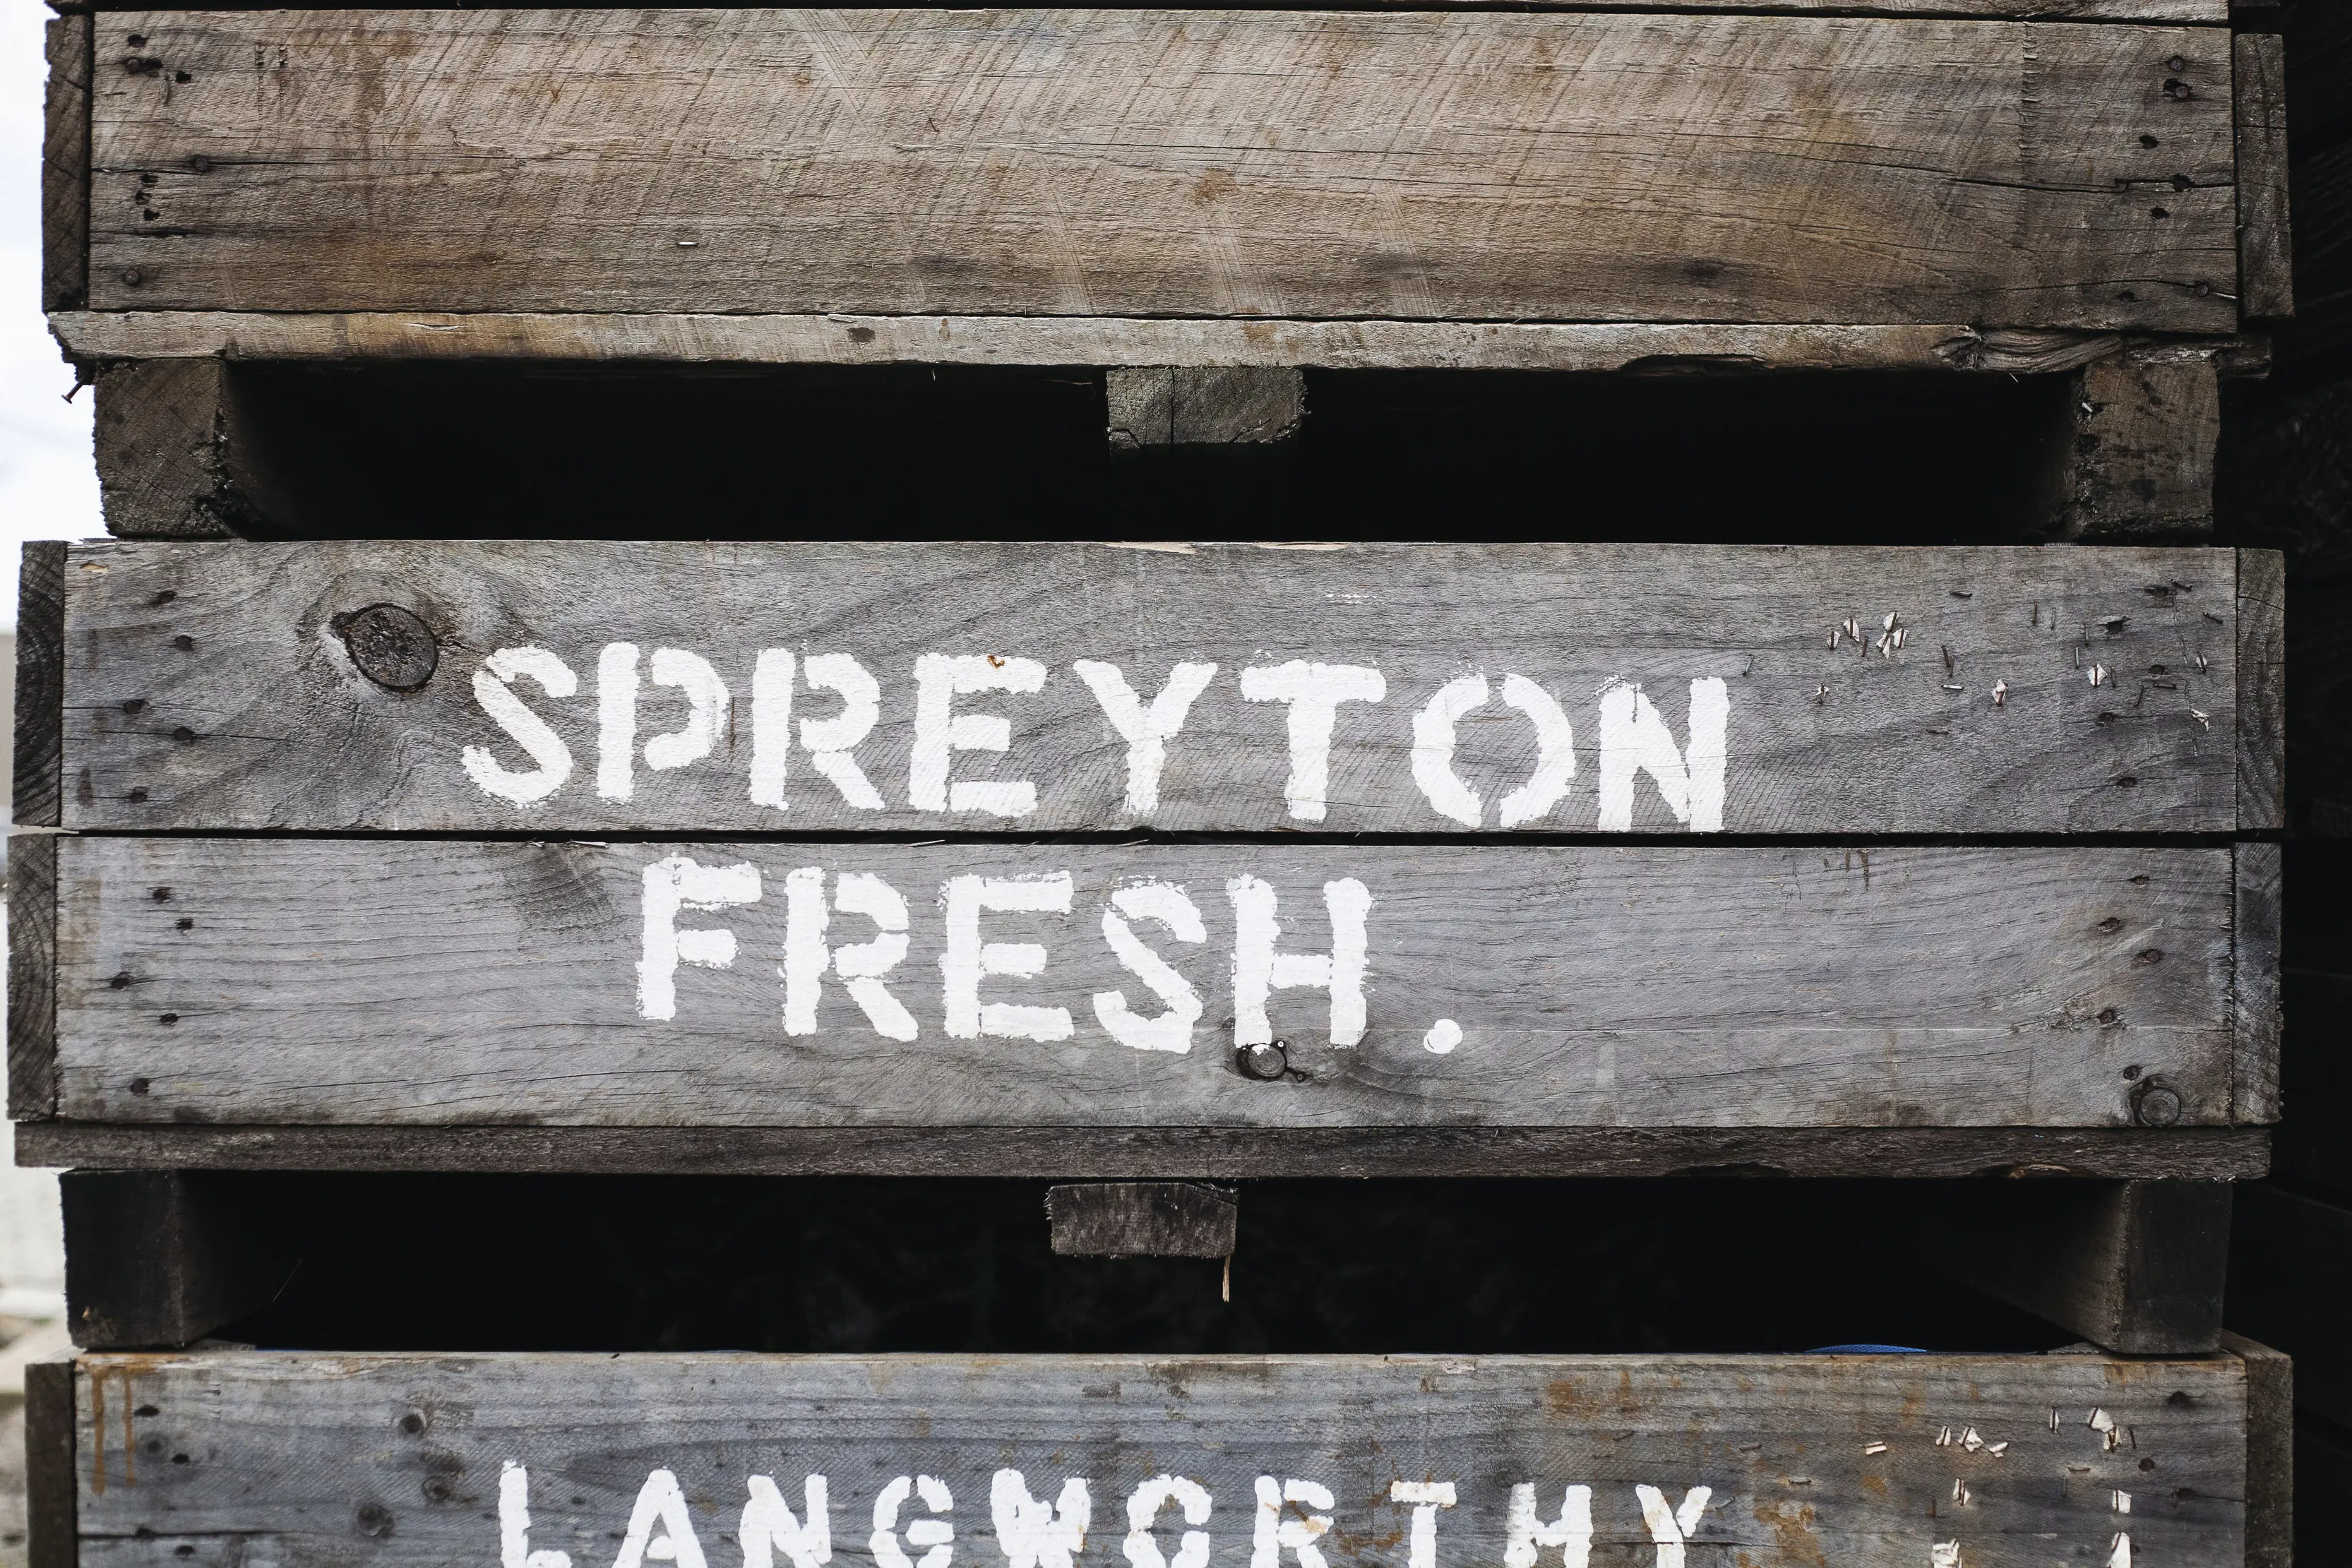 Spreyton Fresh signage painted on wooden panels. 